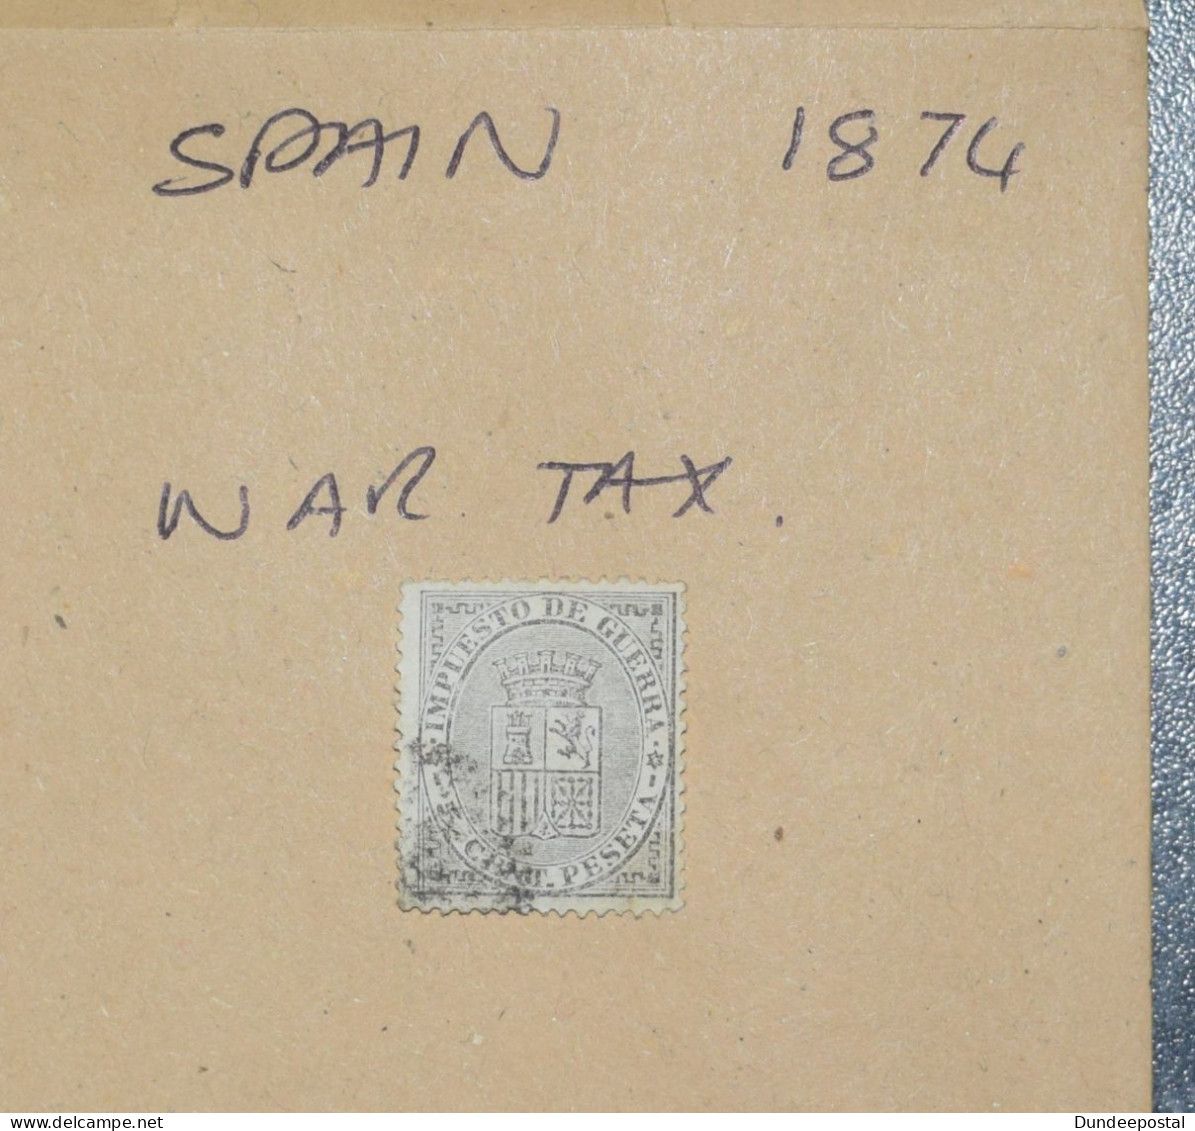 SPAIN  STAMPS  War Tax  1874  ~~L@@K~~ - Oblitérés